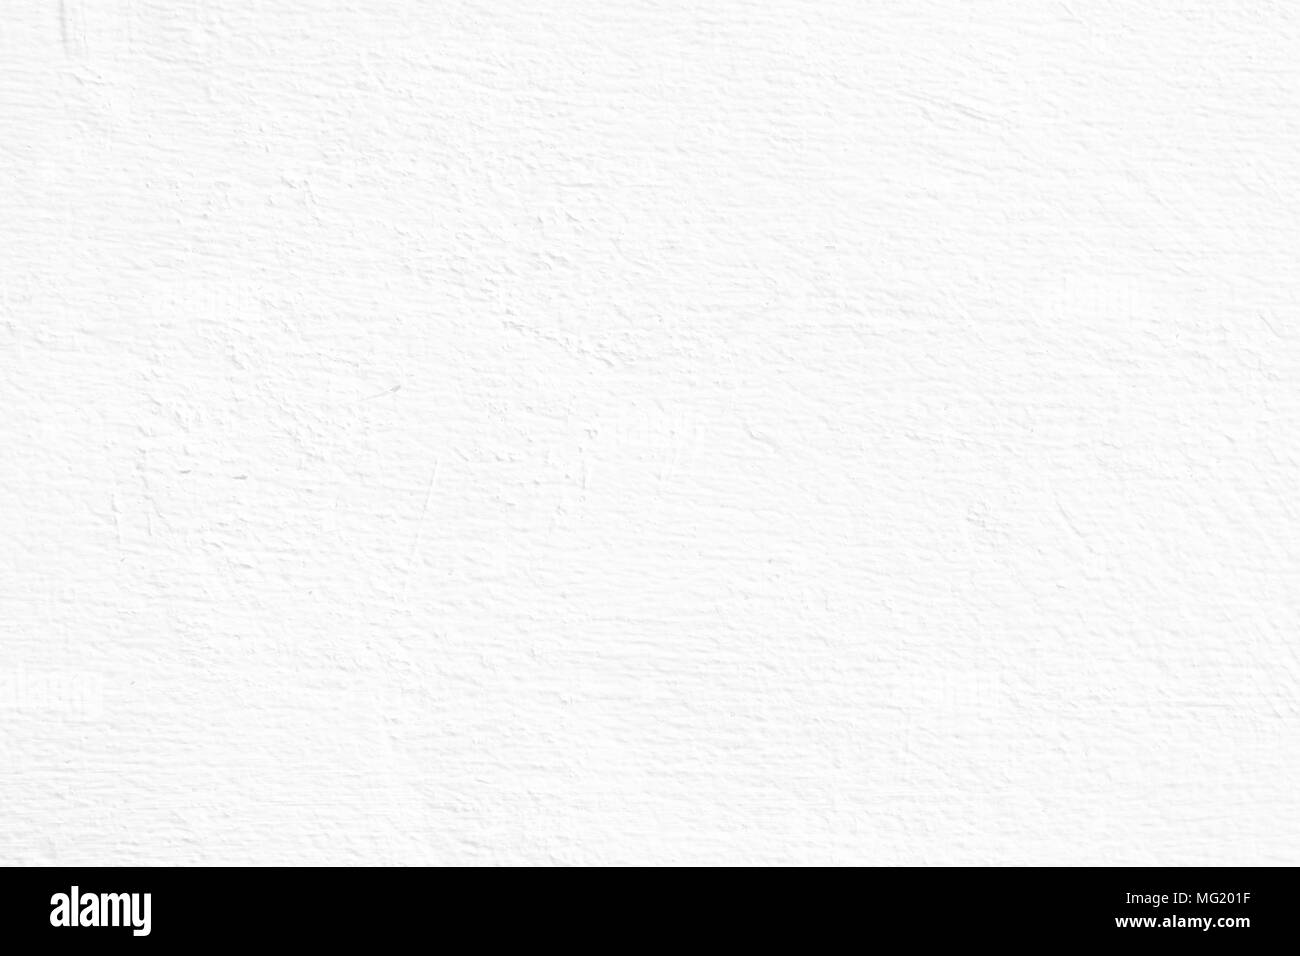 Pintura Blanca Peladura Fondo De Muro De Hormigón. Fotos, retratos,  imágenes y fotografía de archivo libres de derecho. Image 84886013